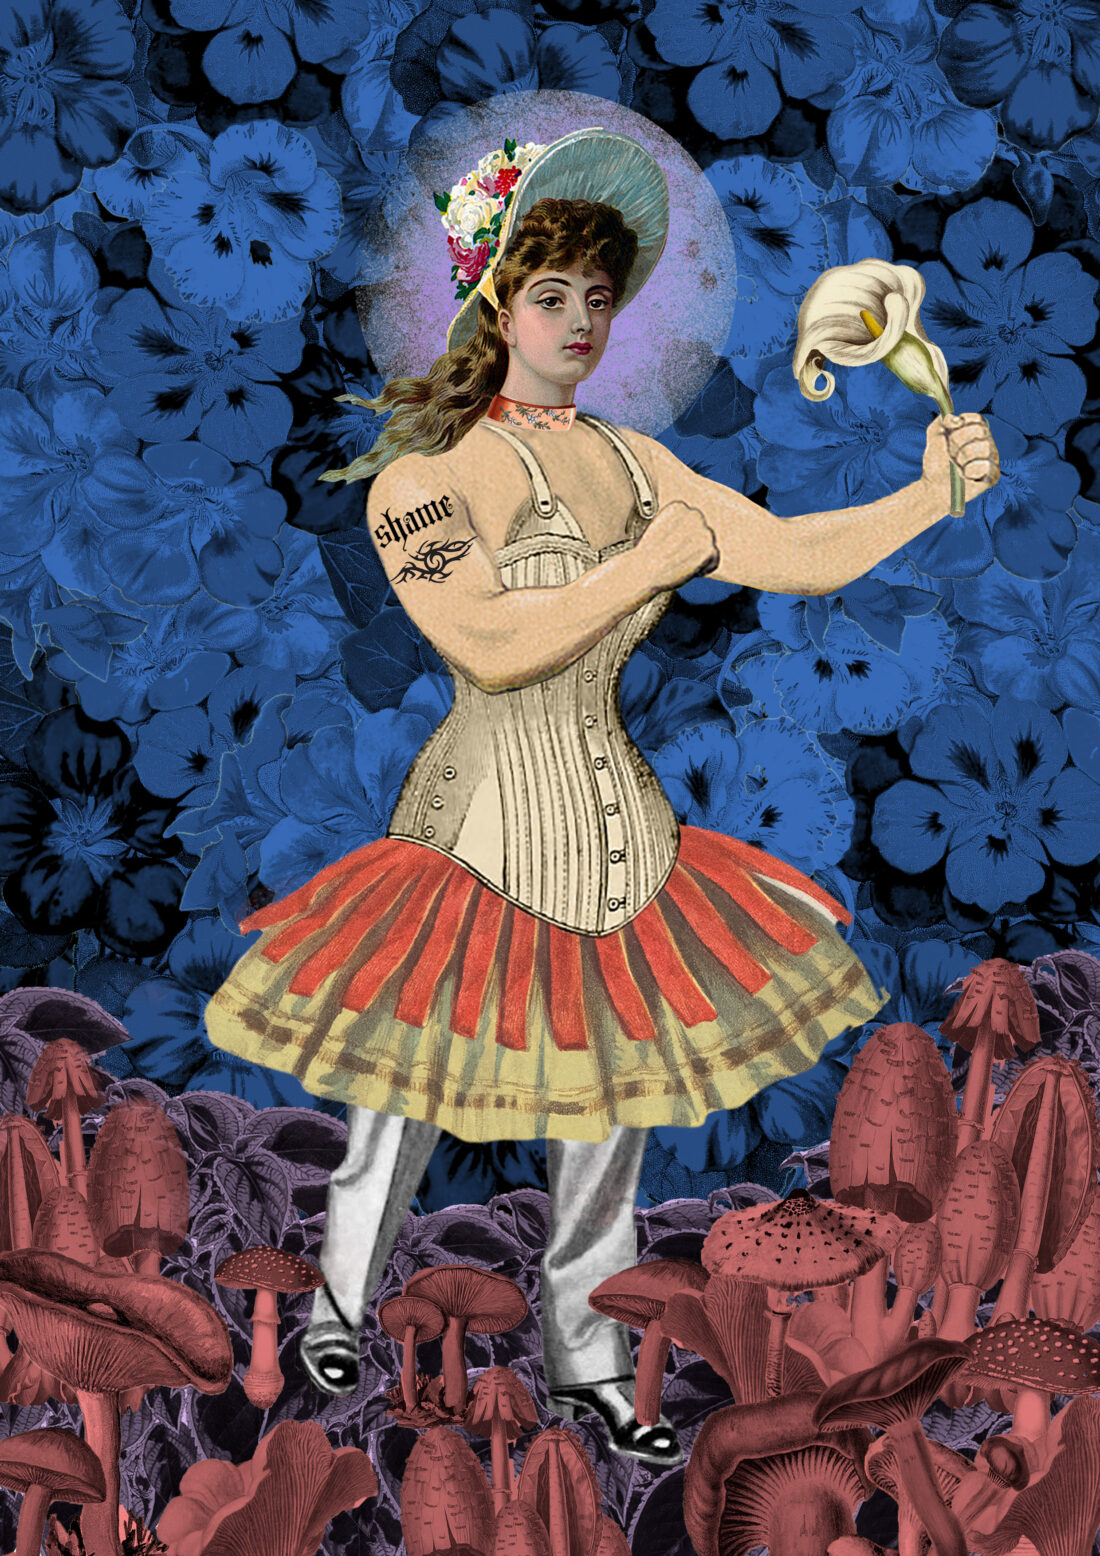 Kolaż przedstawia postać złożoną zarówno z żeńskich jak i męskich atrybutów np. kobieca twarz, umięśnione, męskie ramiona, gorset, spódnica, spodnie i męskie buty. Postać stoi na podłożu z czerwonych grzybów na tle niebieskich kwiatów.